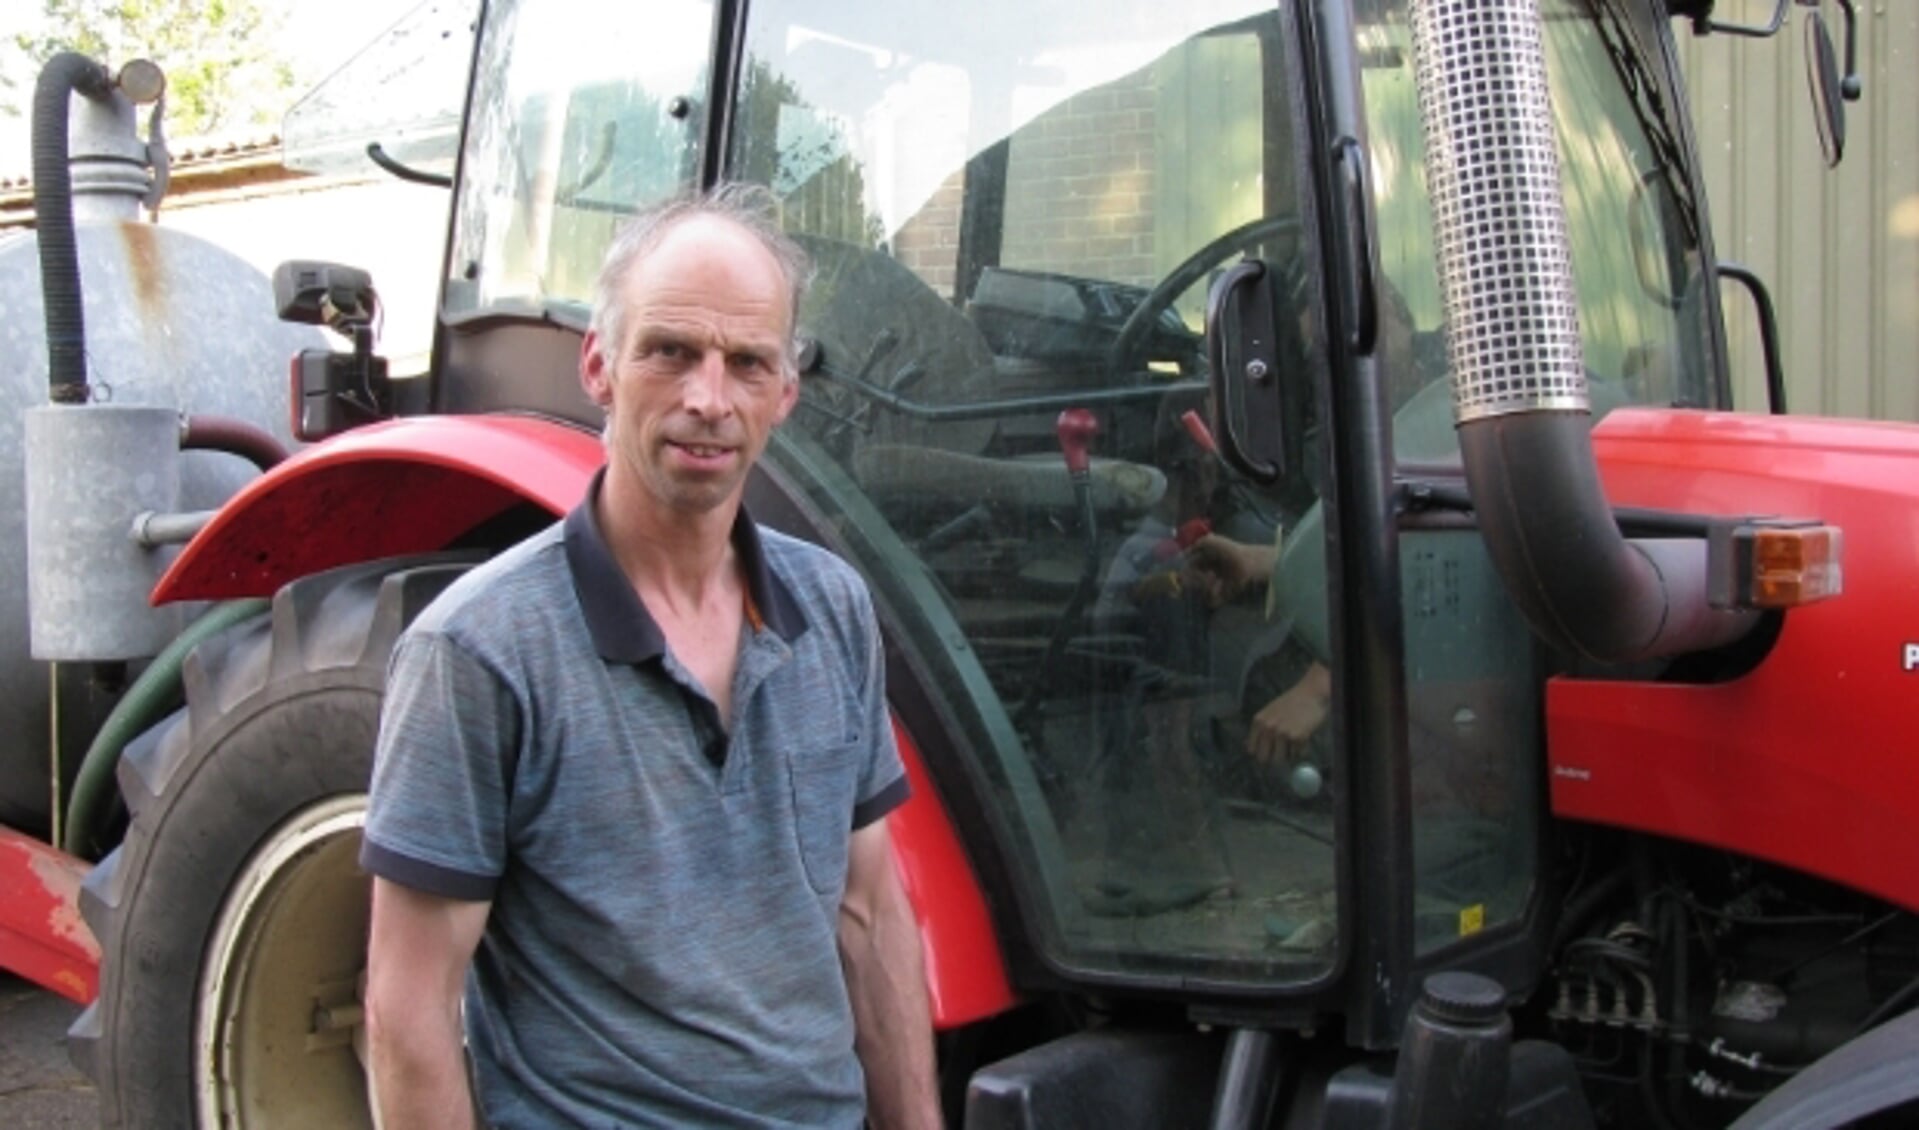 Co van Laar heeft met zijn vrouw Gea een boerderij aan de periferie van Veenendaal. Hij vertelt over het boer-zijn in de huidige tijd.